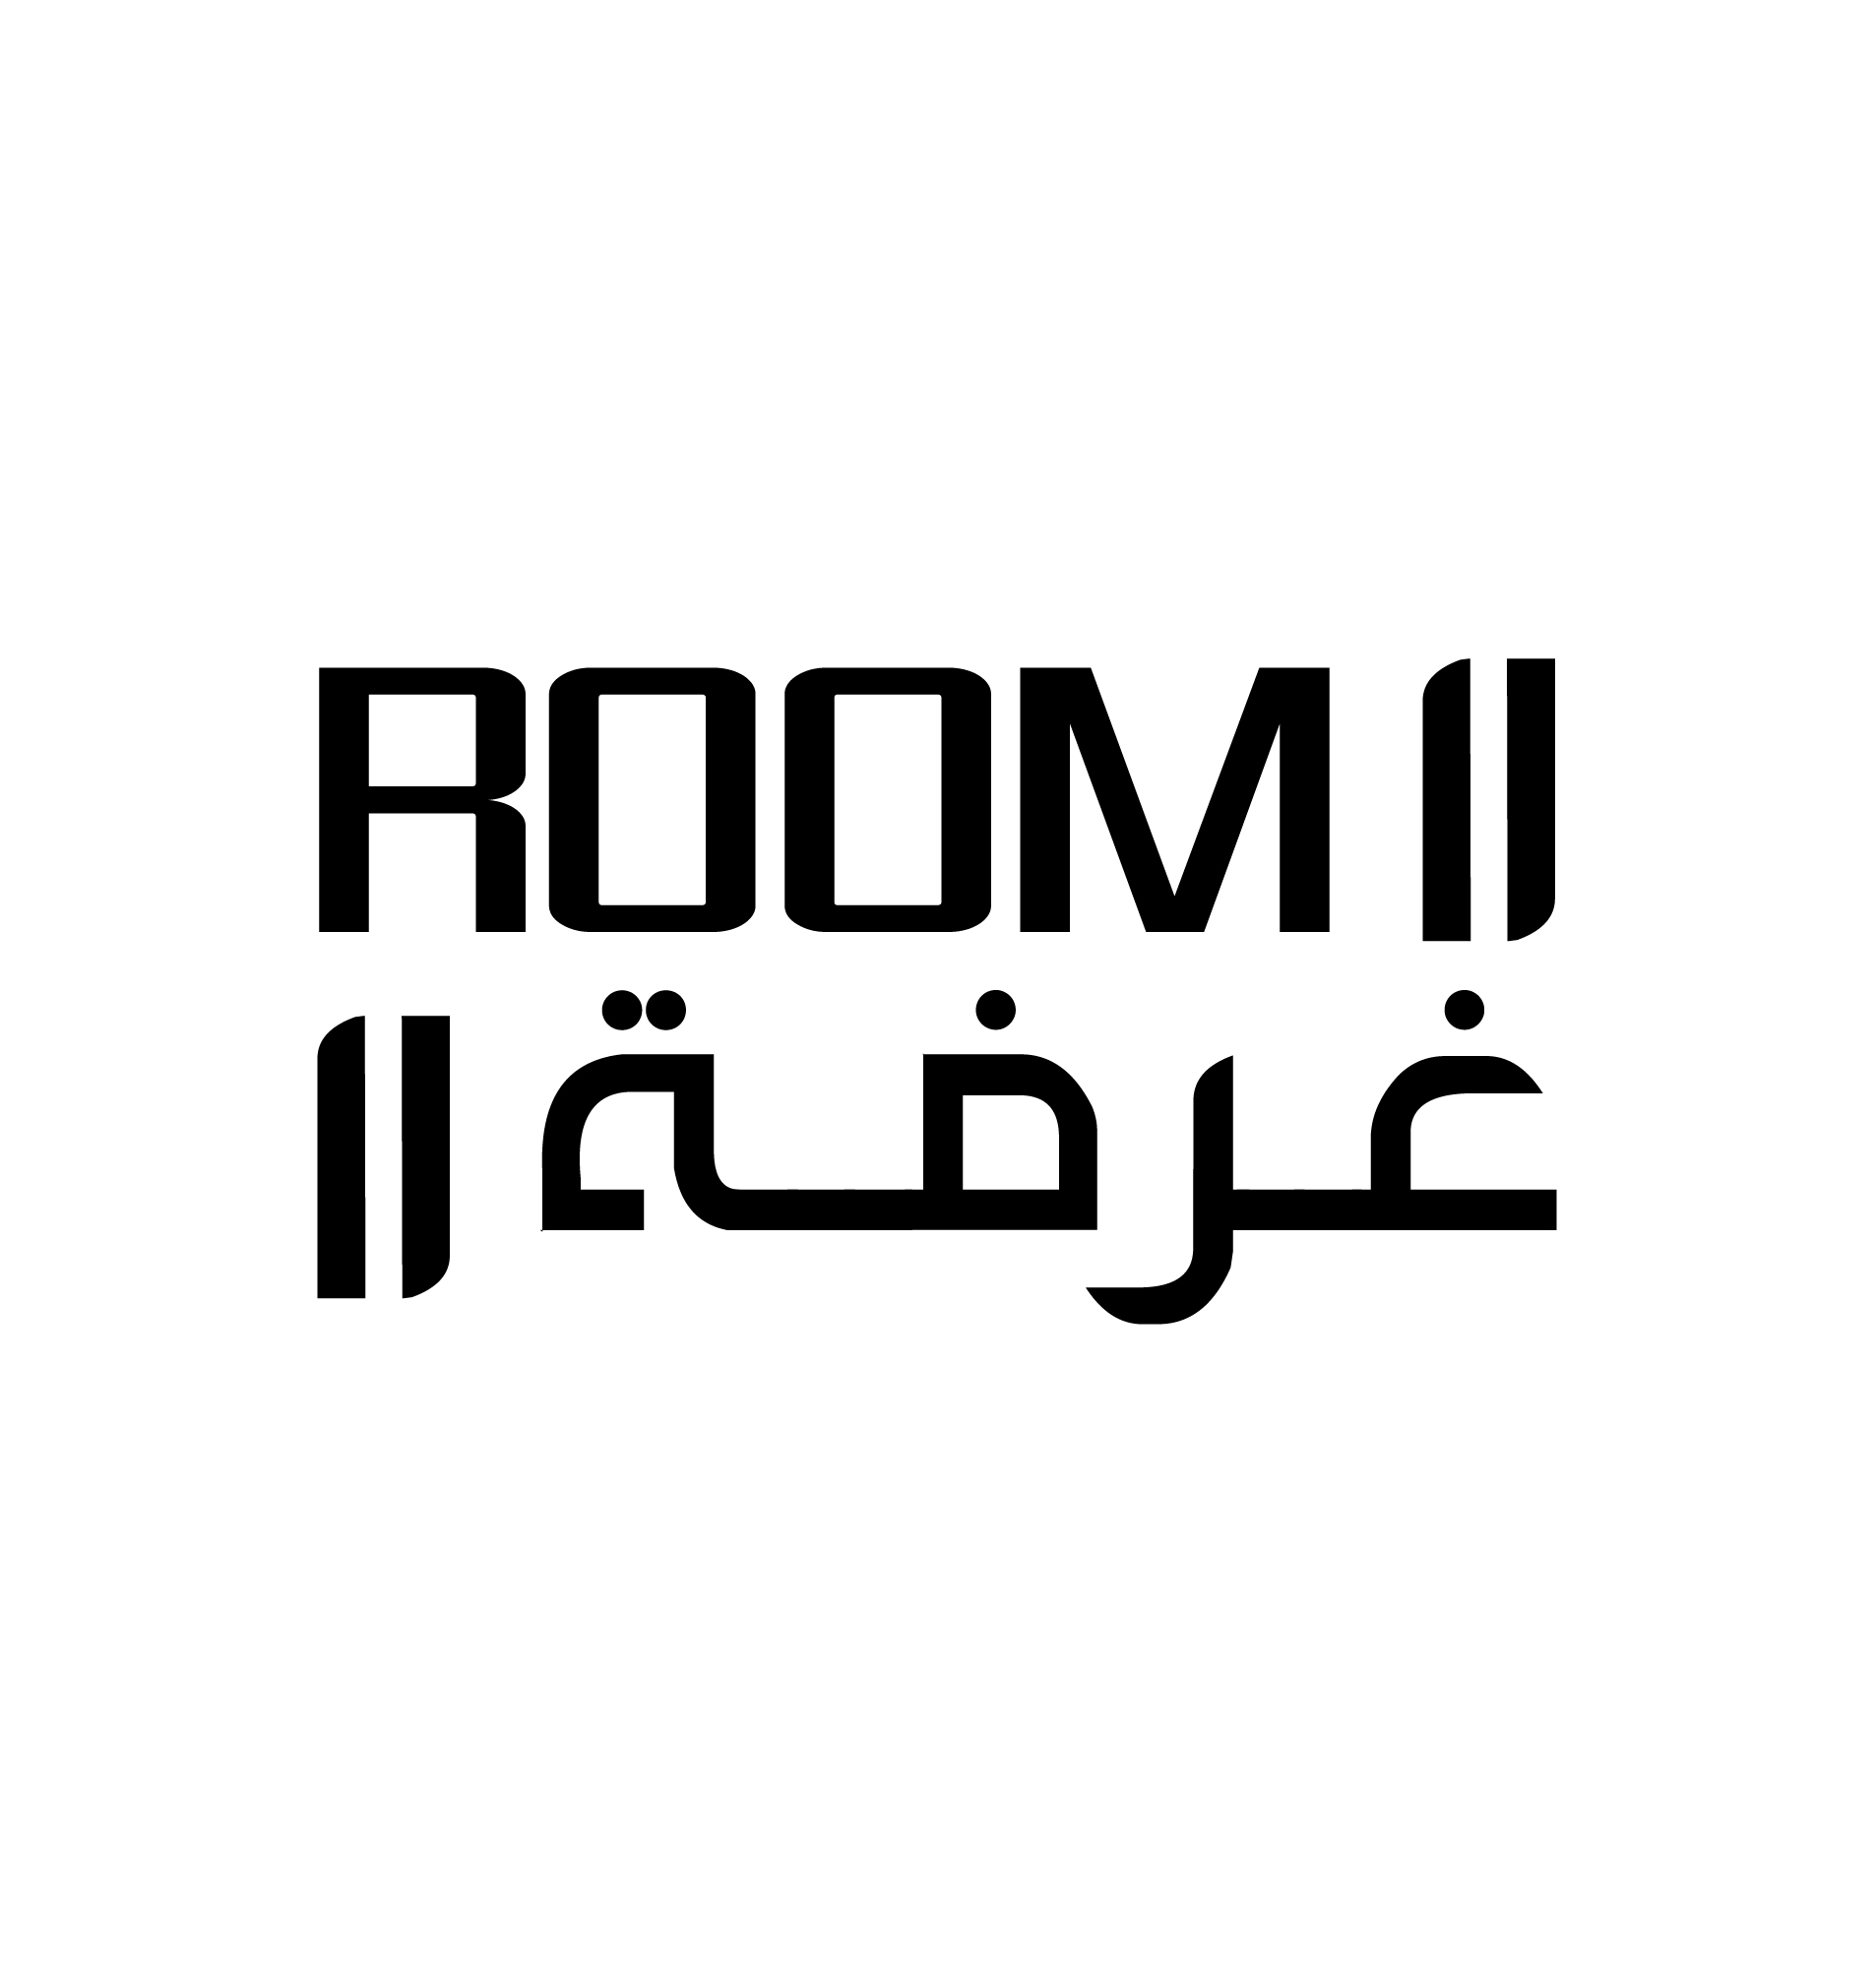 Room 11